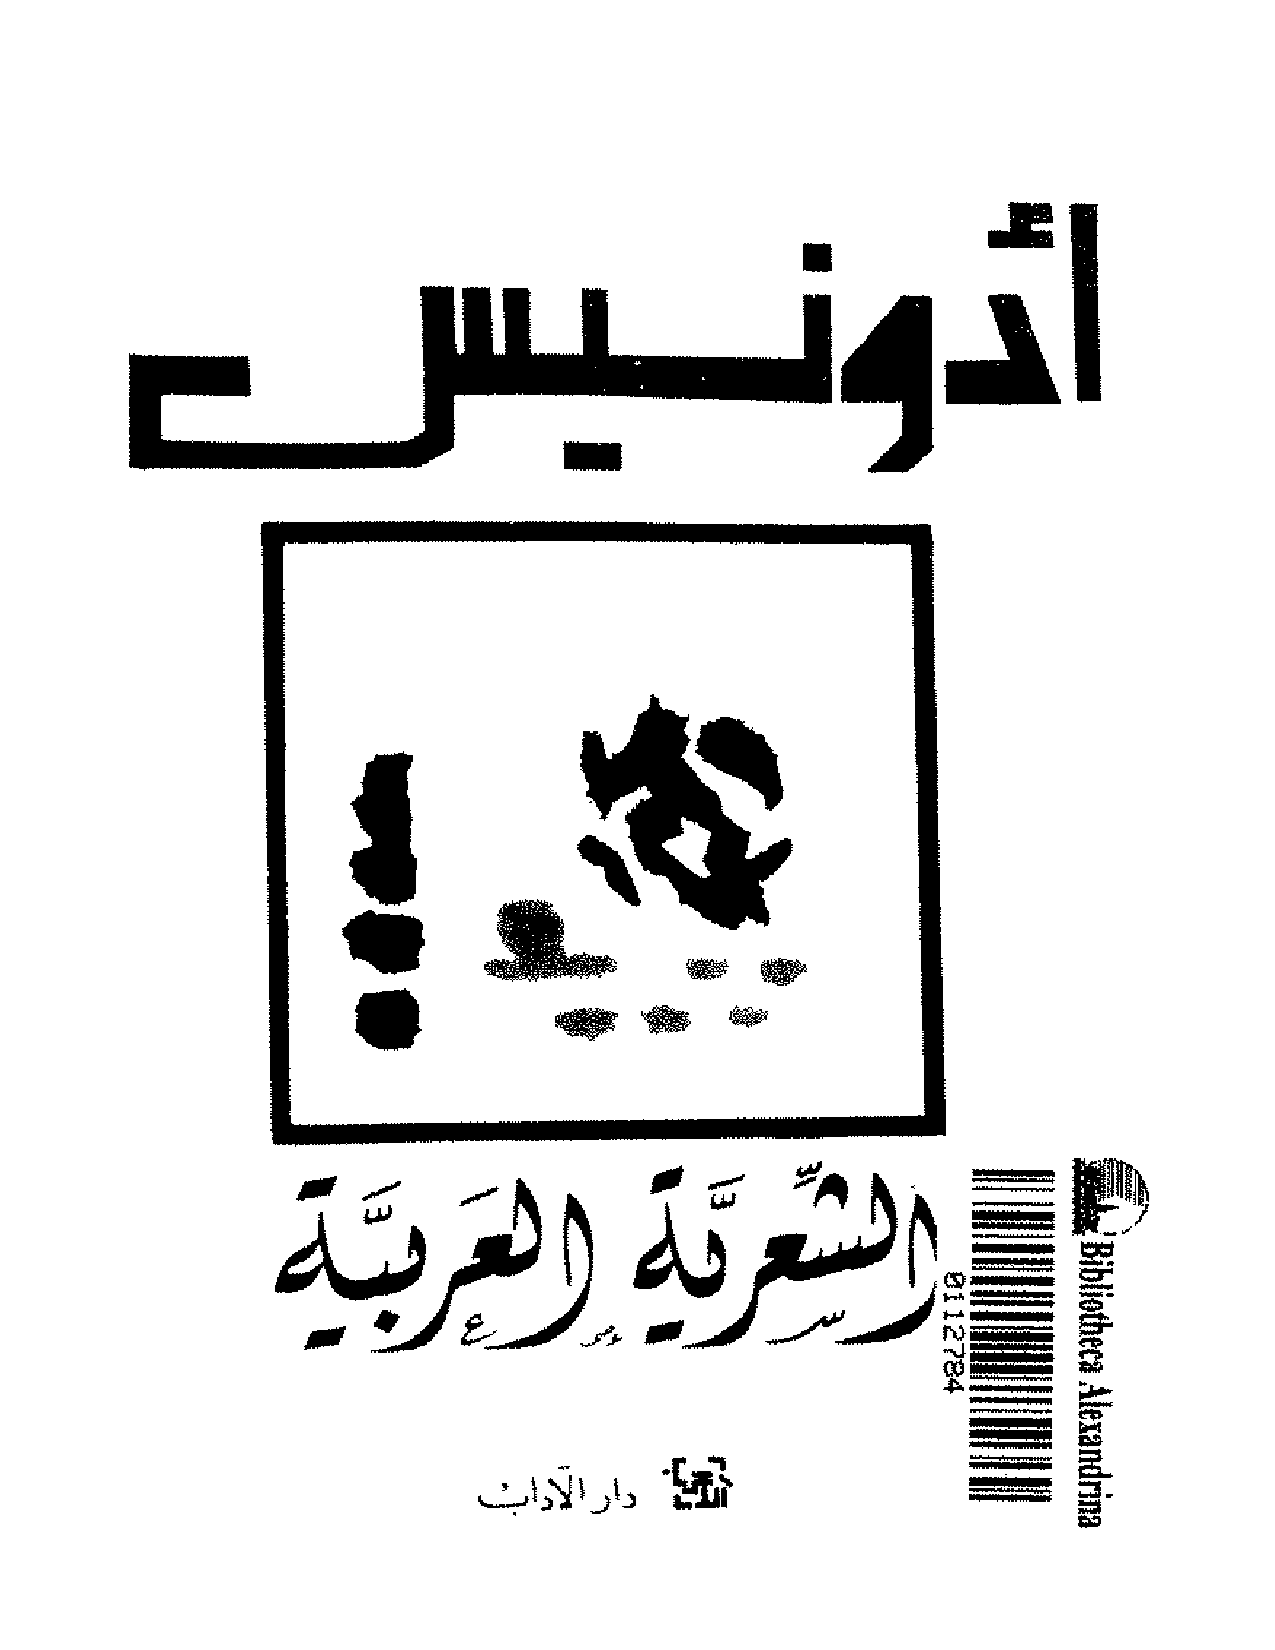 تنزيل وتحميل كتاِب أدونيس الشعرية العربية pdf برابط مباشر مجاناً 